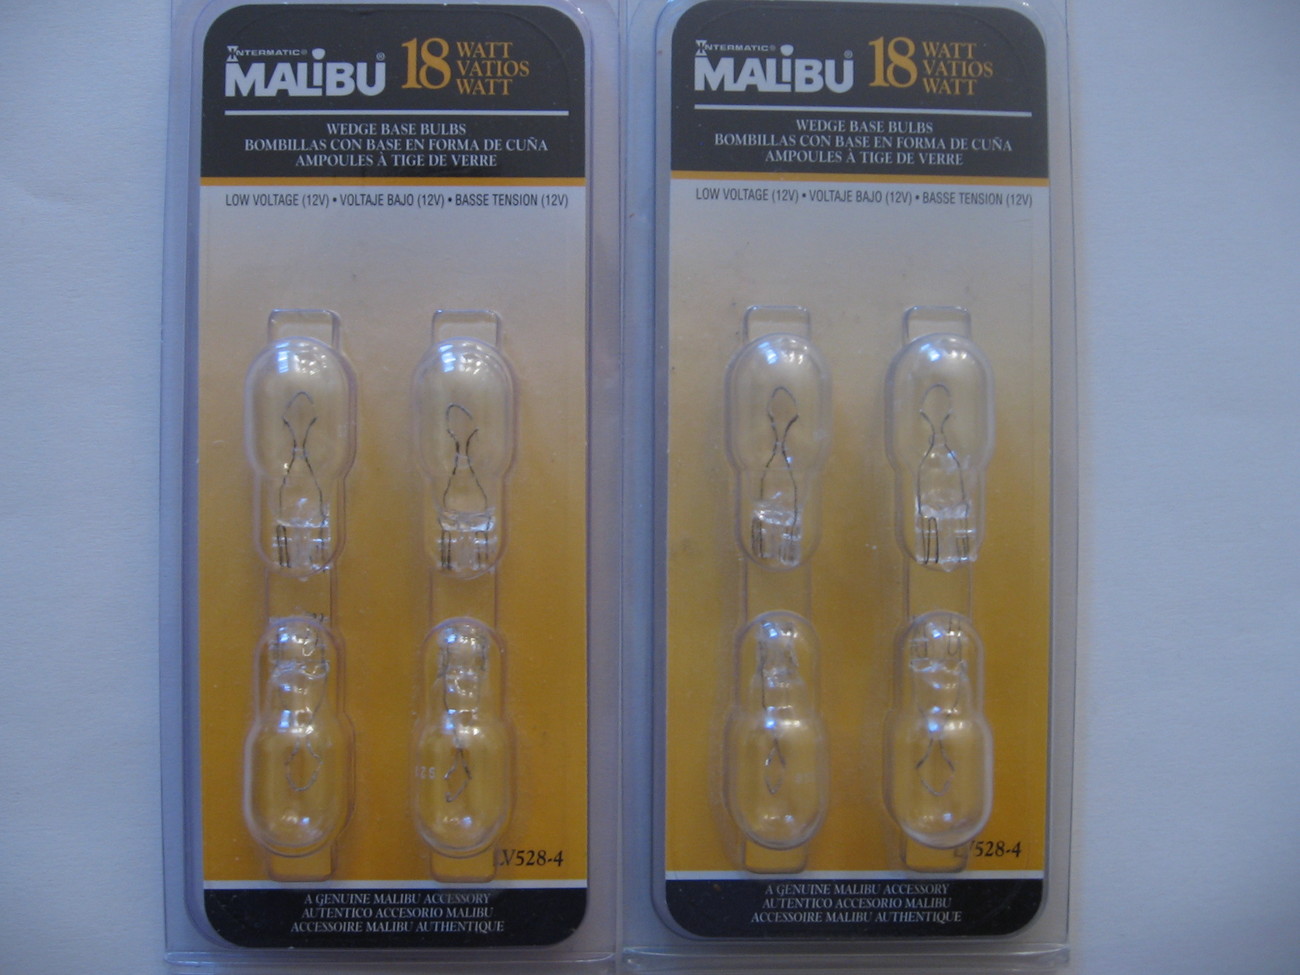 Two packs of Malibu 18 watt wedge base bulbs - $3.00